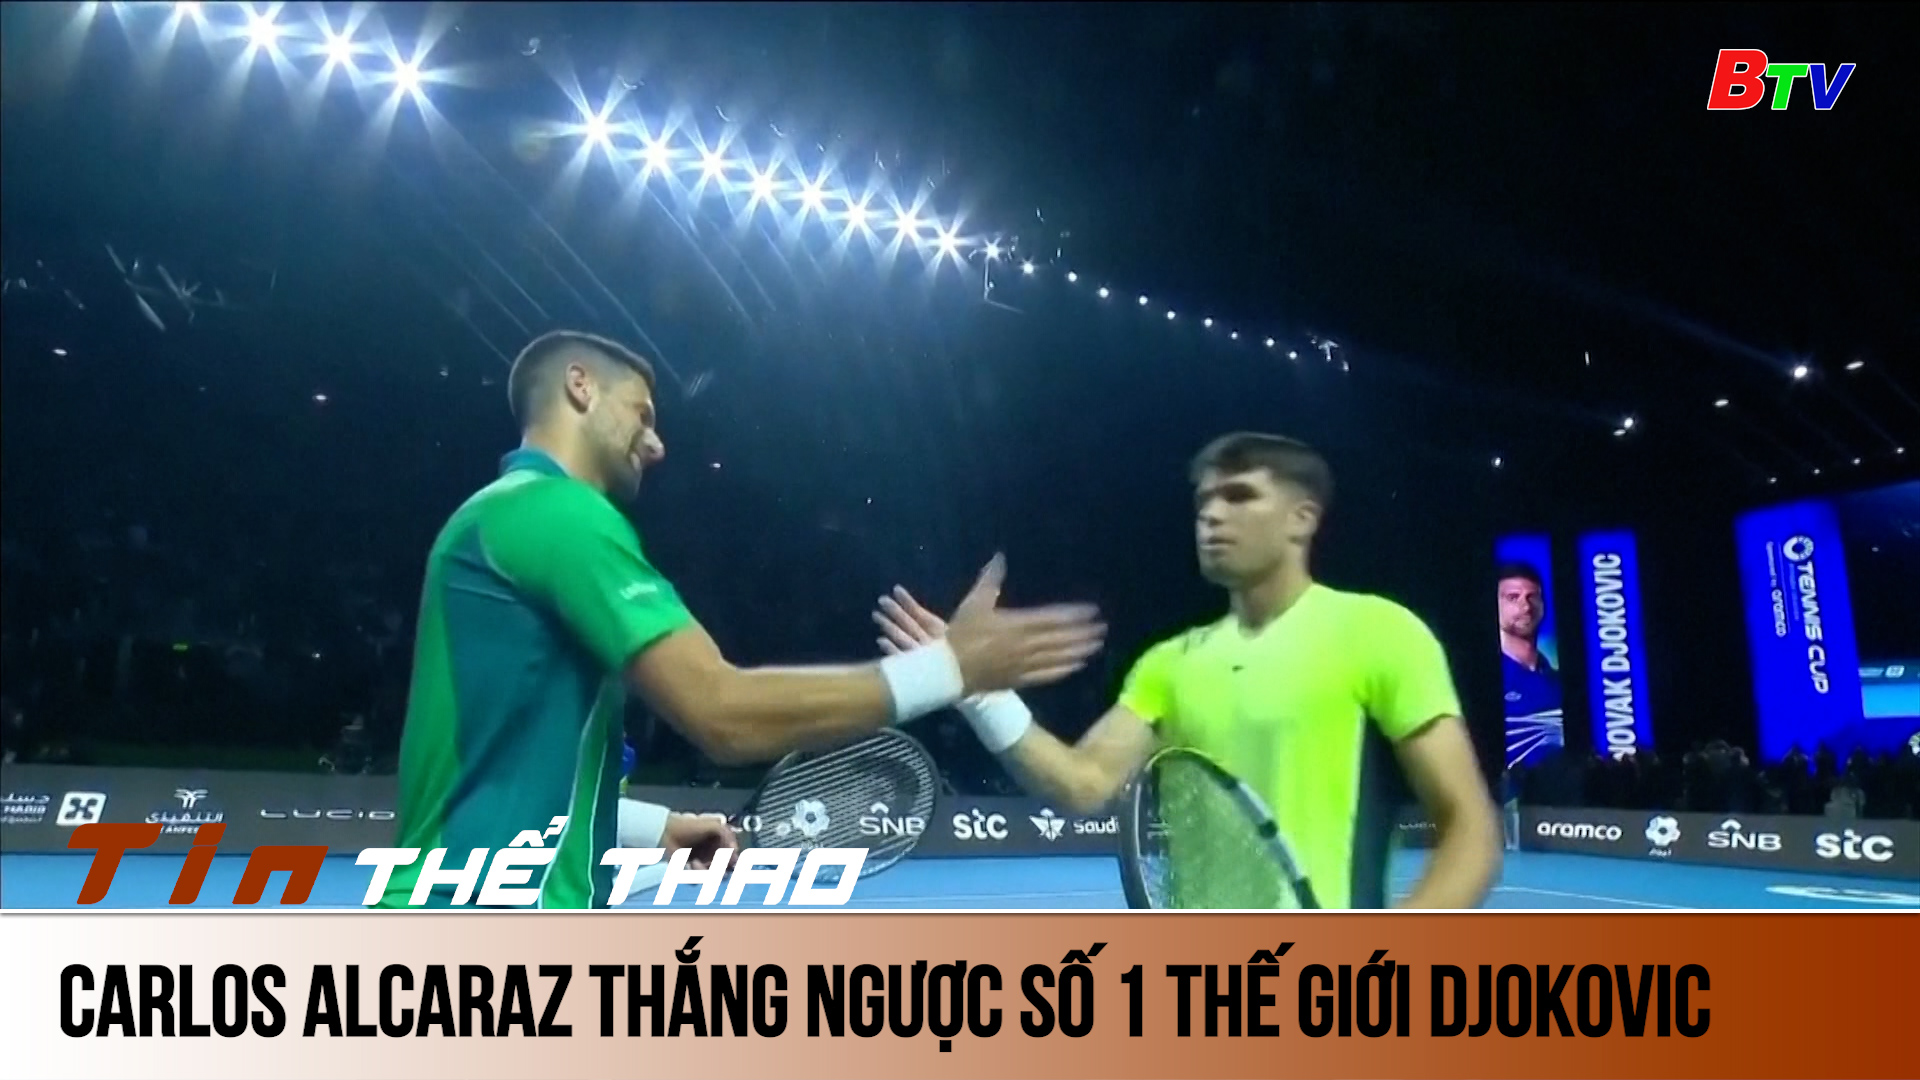 Carlos Alcaraz thắng ngược tay vợt số 1 Thế giới Novak Djokovic | Tin Thể thao 24h	